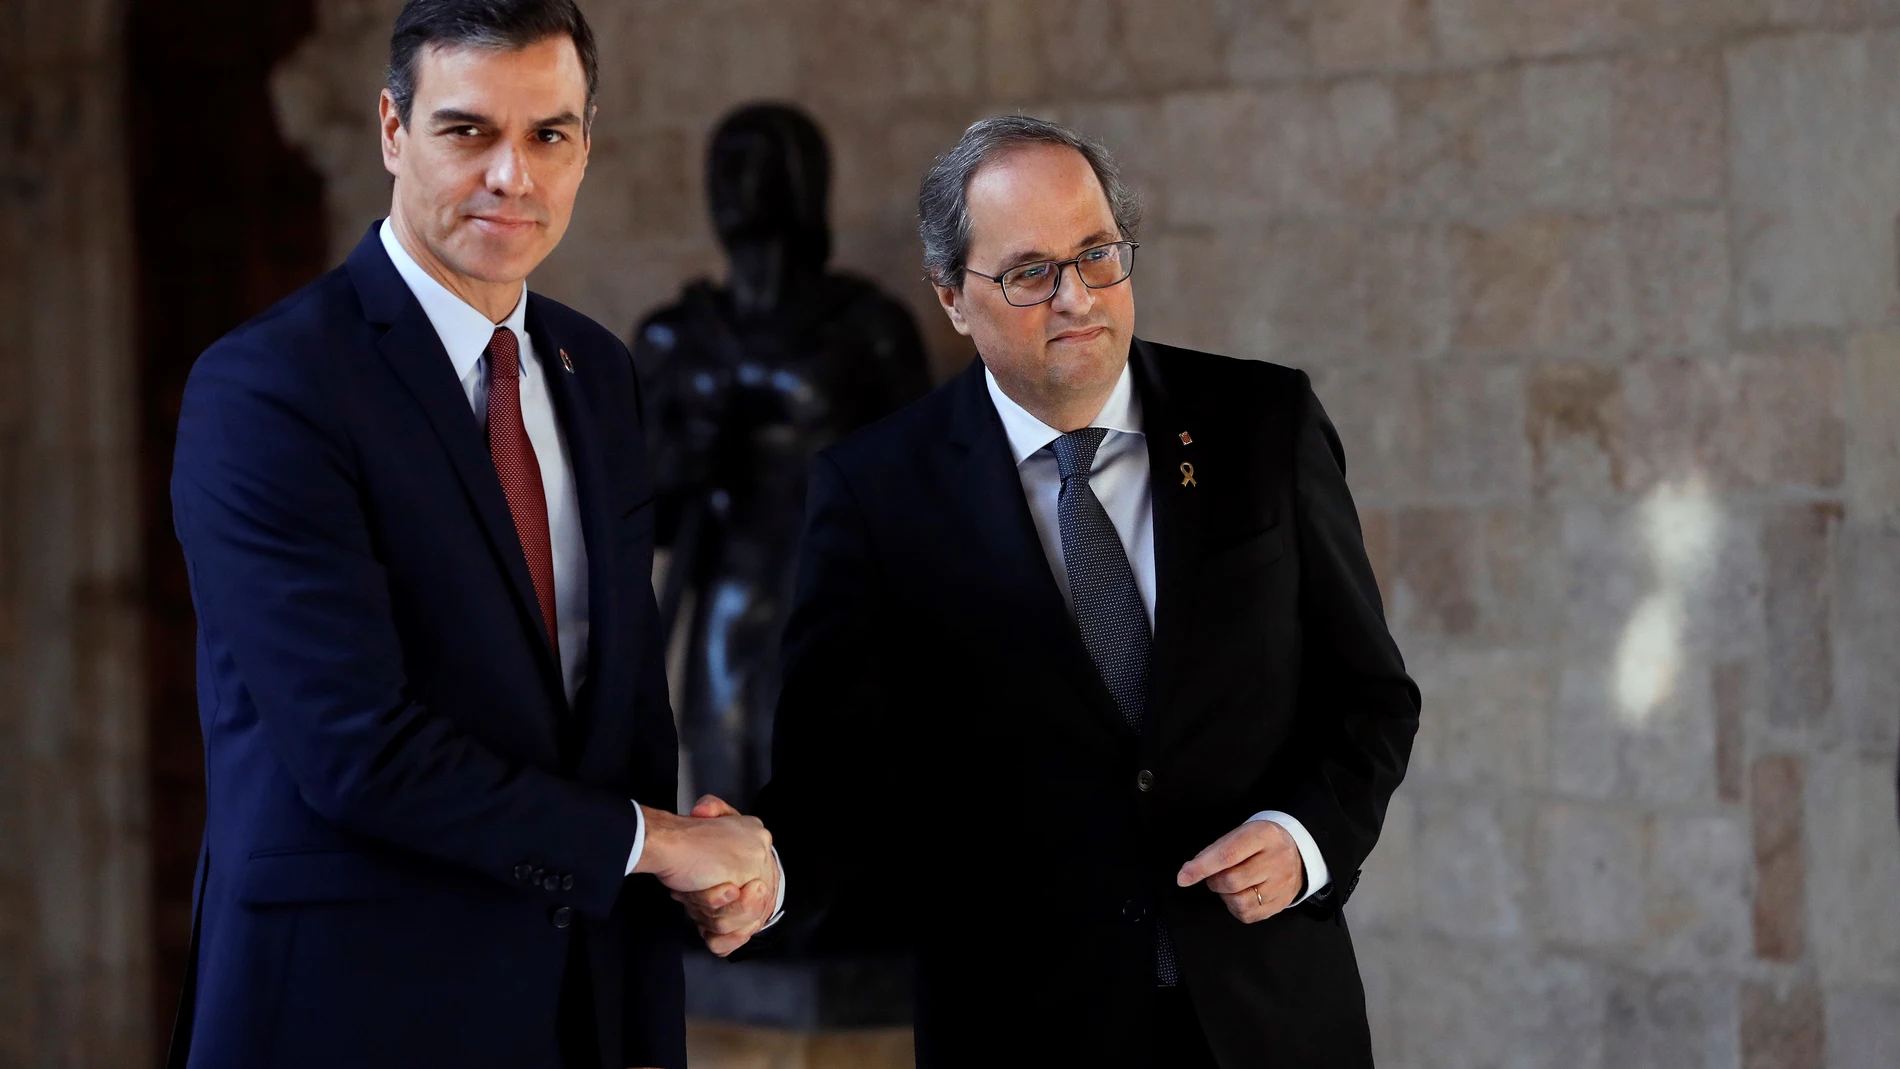 El presidente de la Generalitat, Quim Torra (dech) recibe al presidente del Gobierno, Pedro Sánchez (izq), posan juntos antes de su reunión, en Barcelona